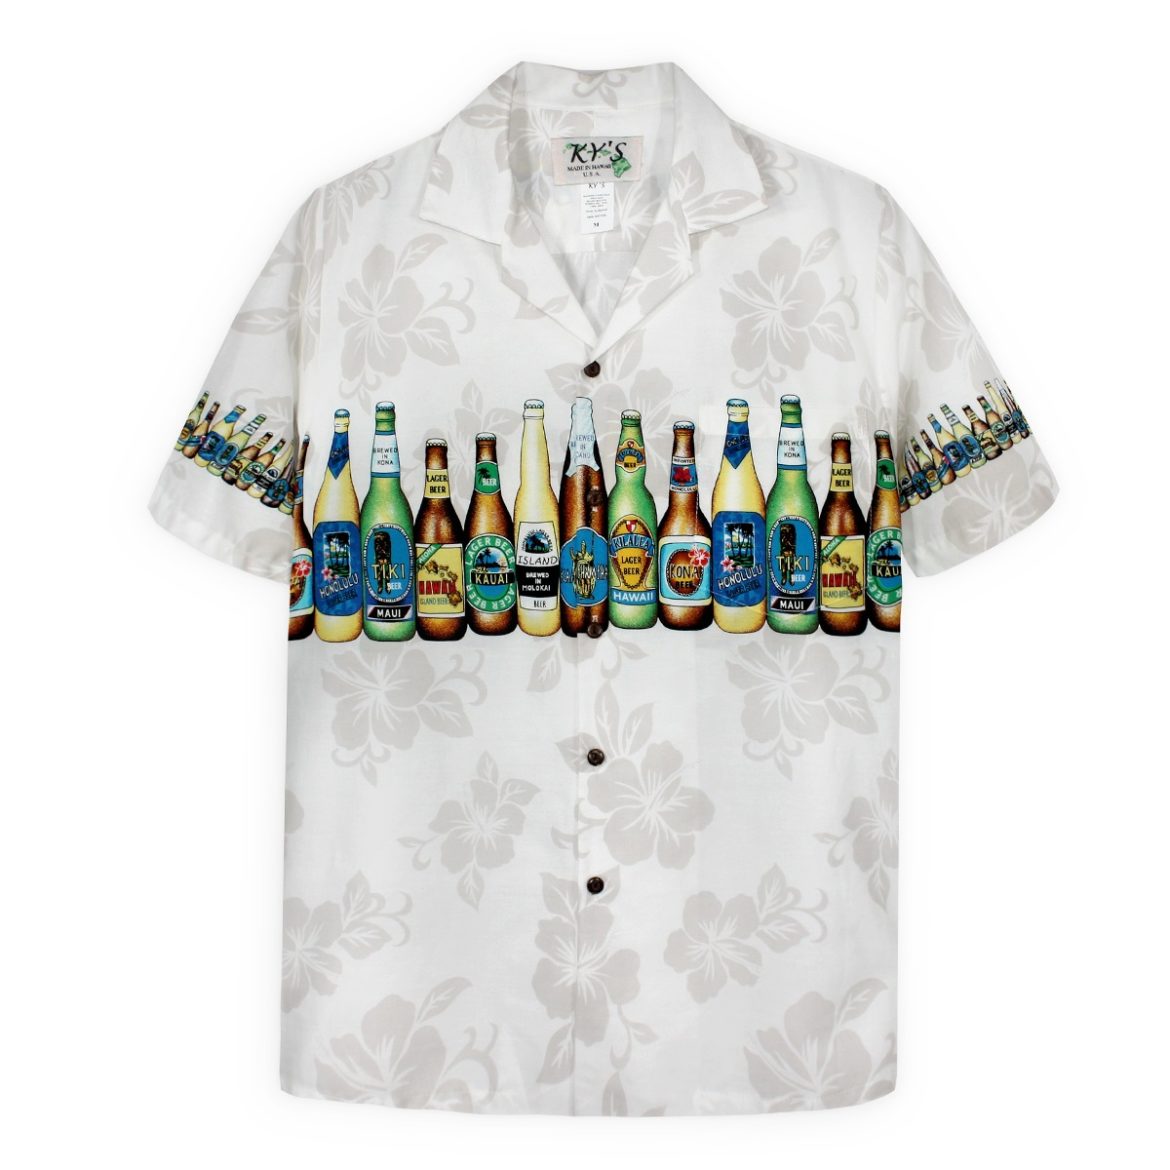 Mens Hawaiian Shirt - Bottoms Up- Cream - Beer Bottle Shirt